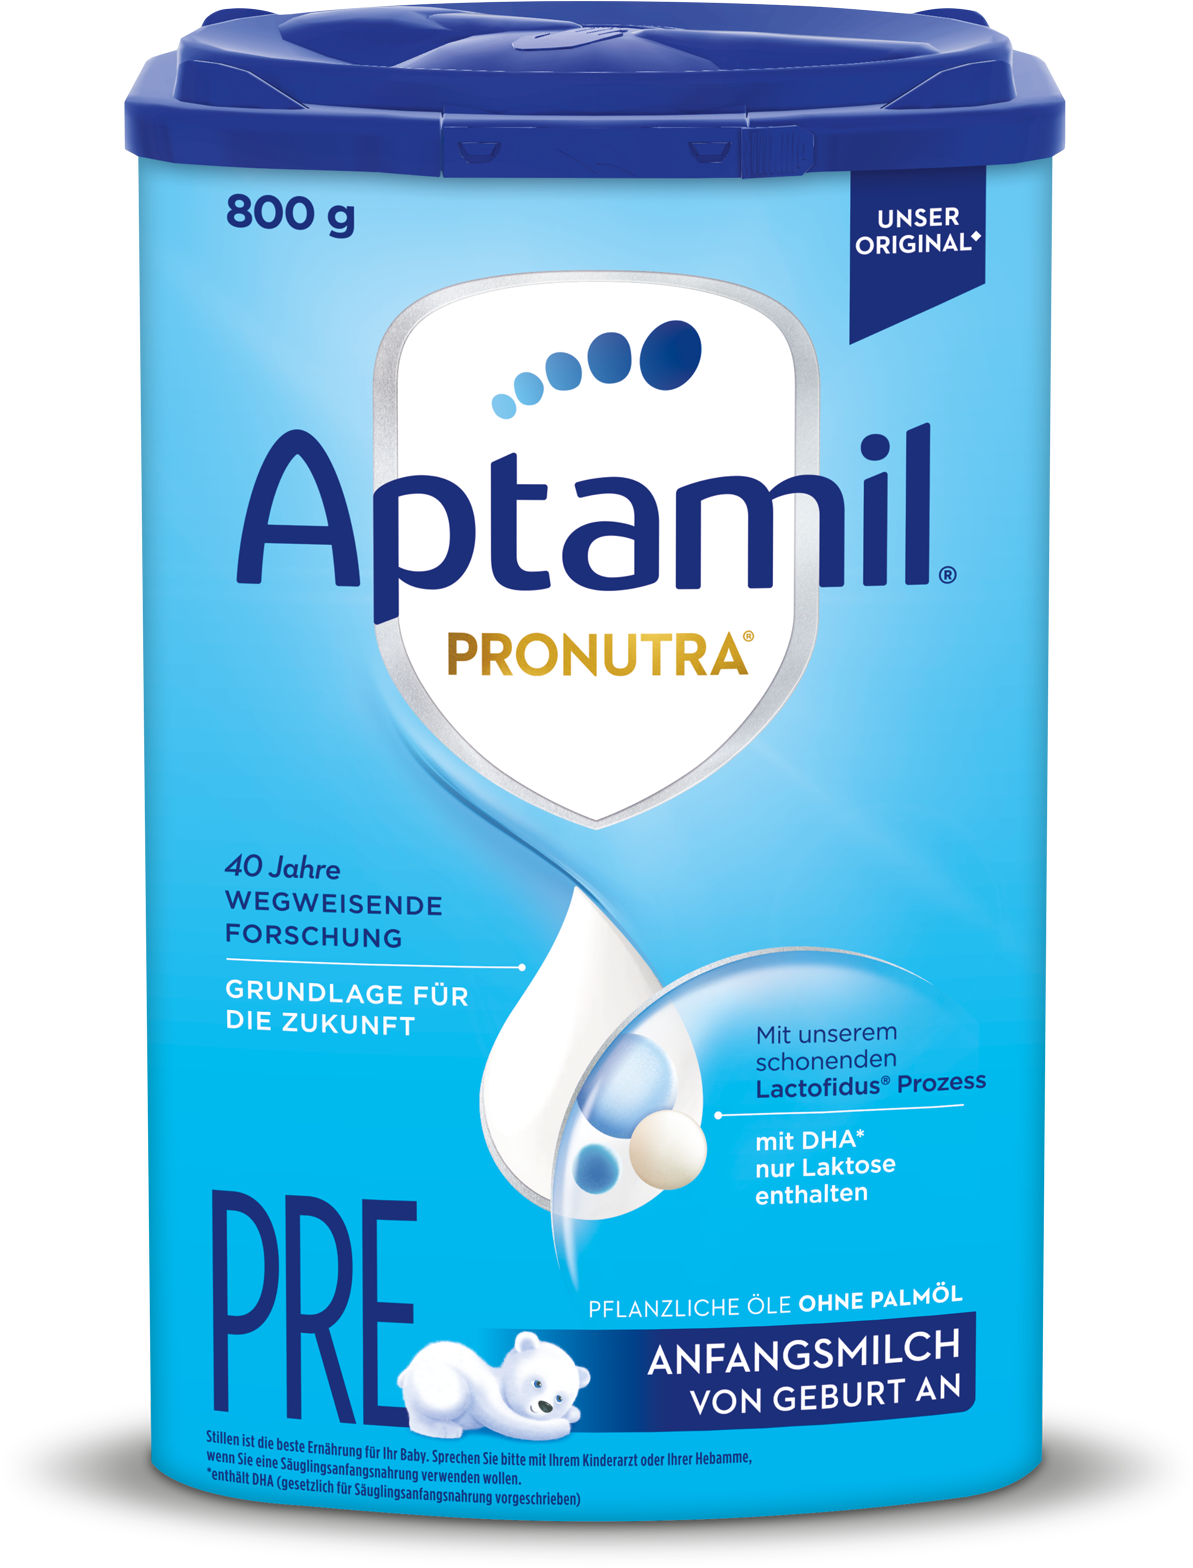 Aptamil Pre Pronutra, Anfangsmilch